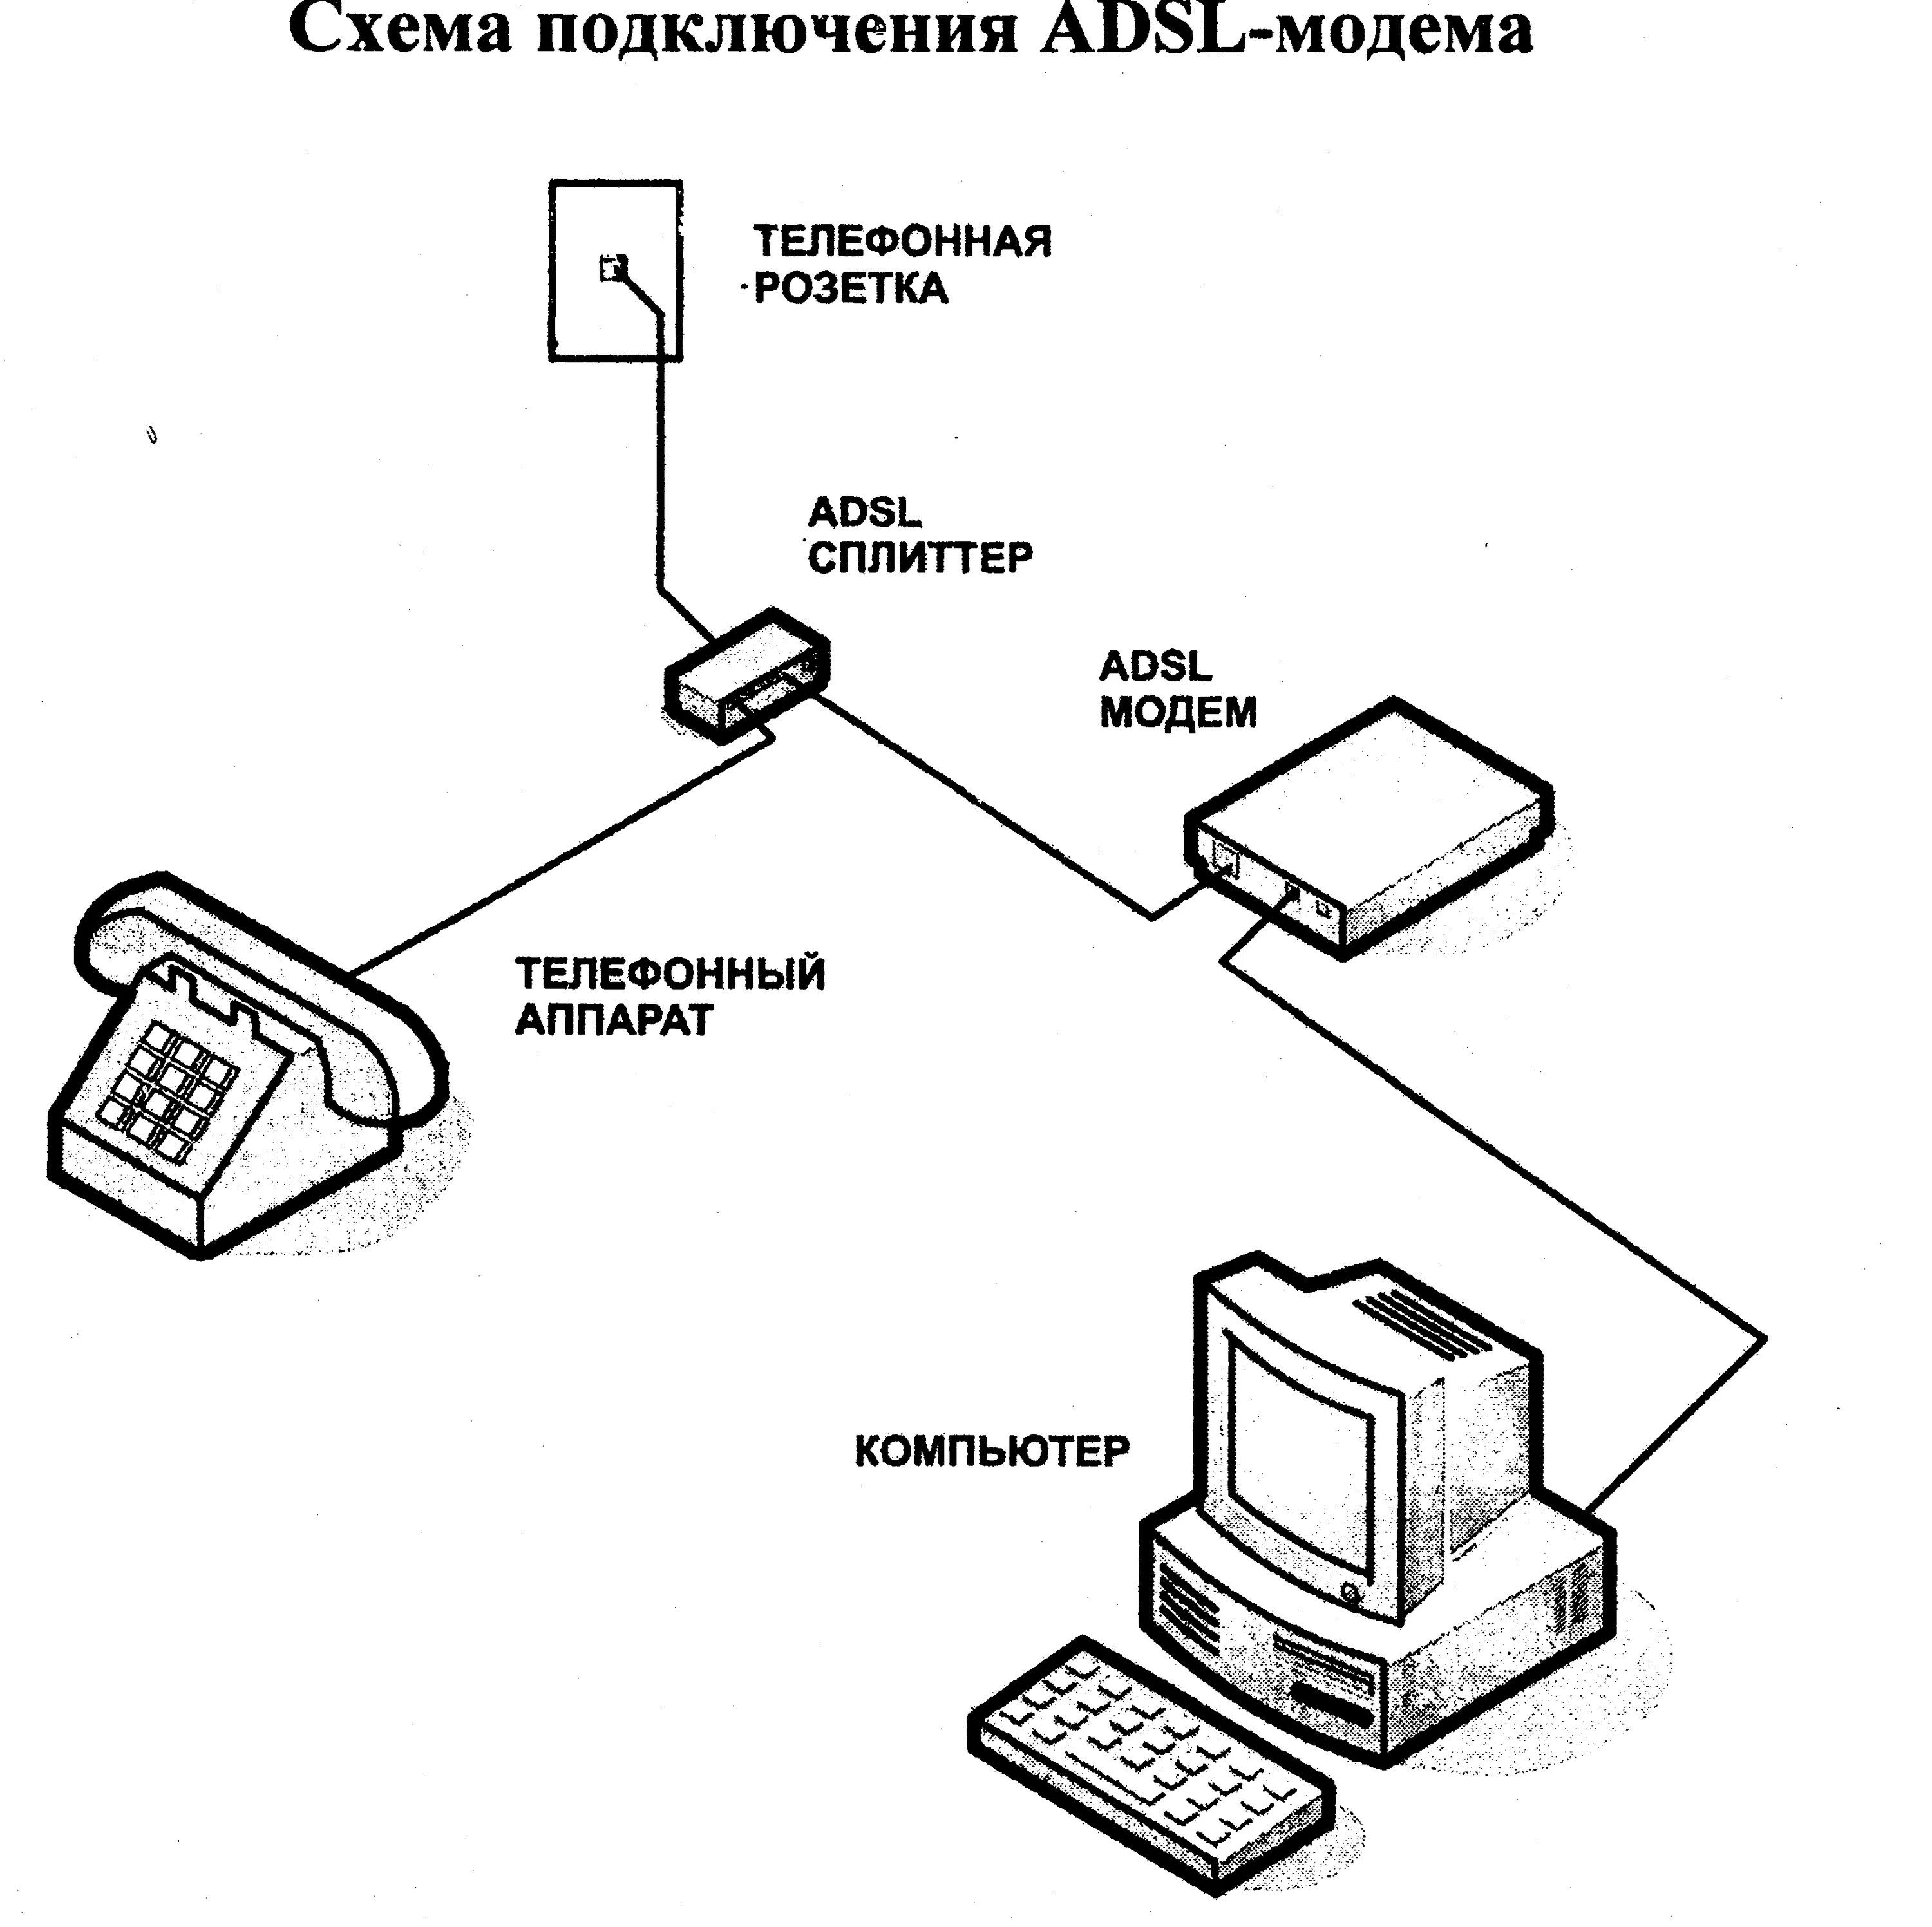 Стационарный доступ. Схема соединения телефонного кабеля с модемом. Схема ADSL модема. Схема подключения АДСЛ модема. Схема подключения ADSL модема к телефонной линии.